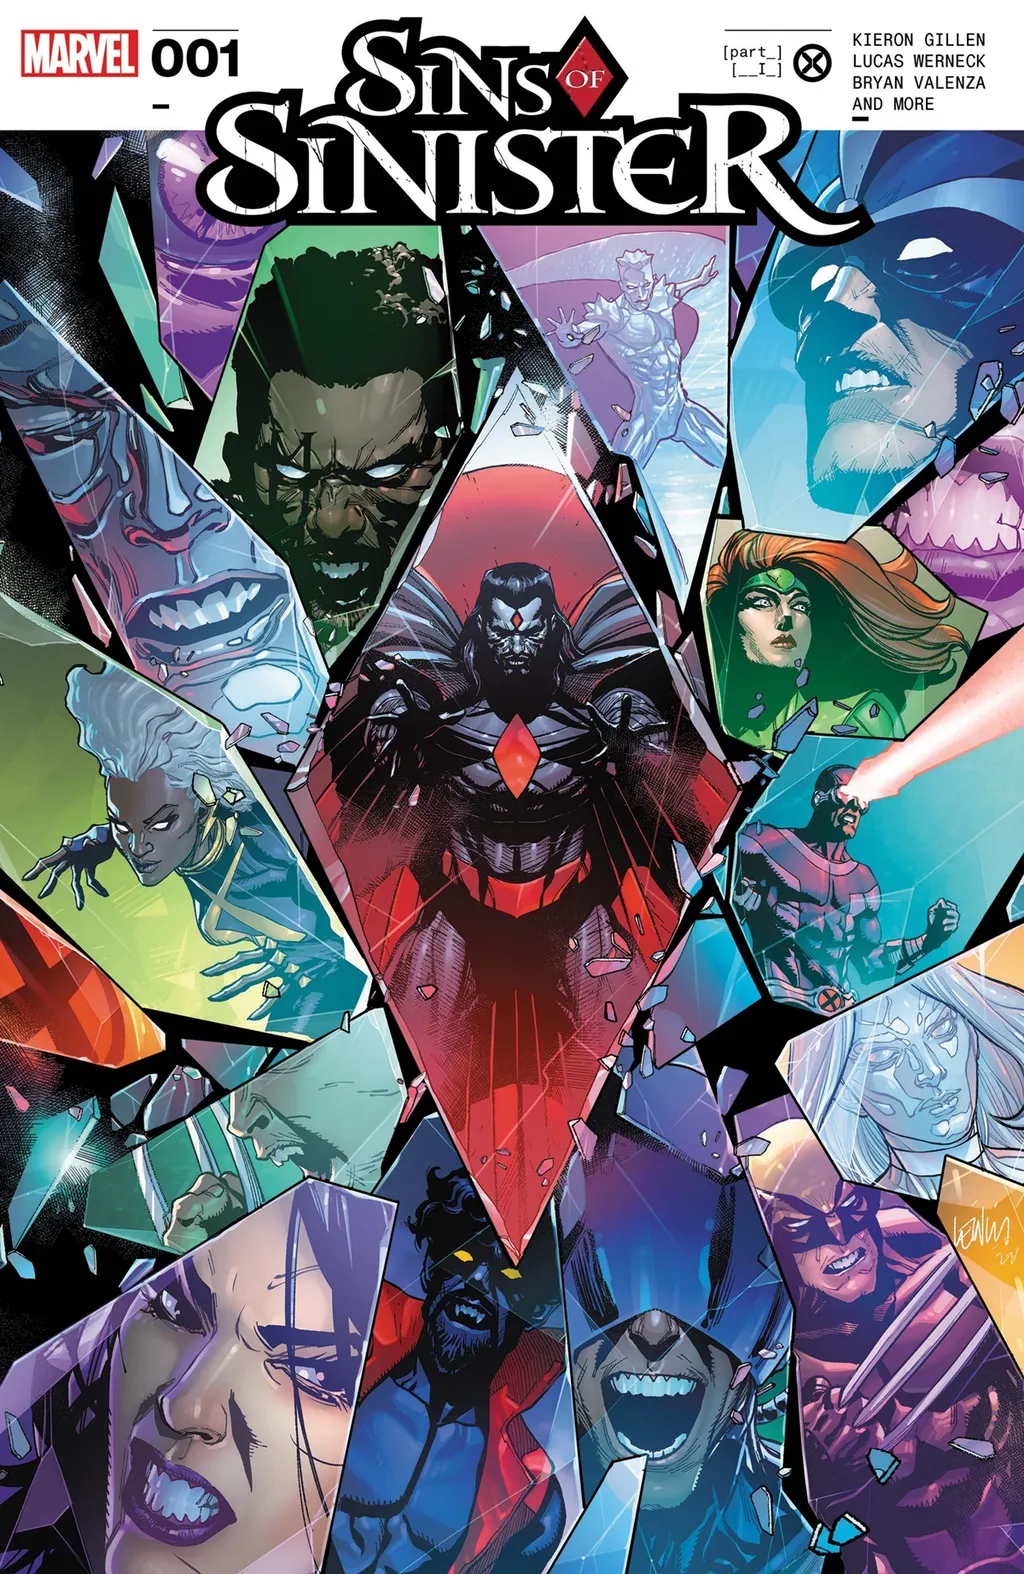 Nova saga que mostra as maquinações do Senhor Sinistro contra os X-Men começou nesta semana nos EUA (Imagem: Reprodução/Marvel Comics)